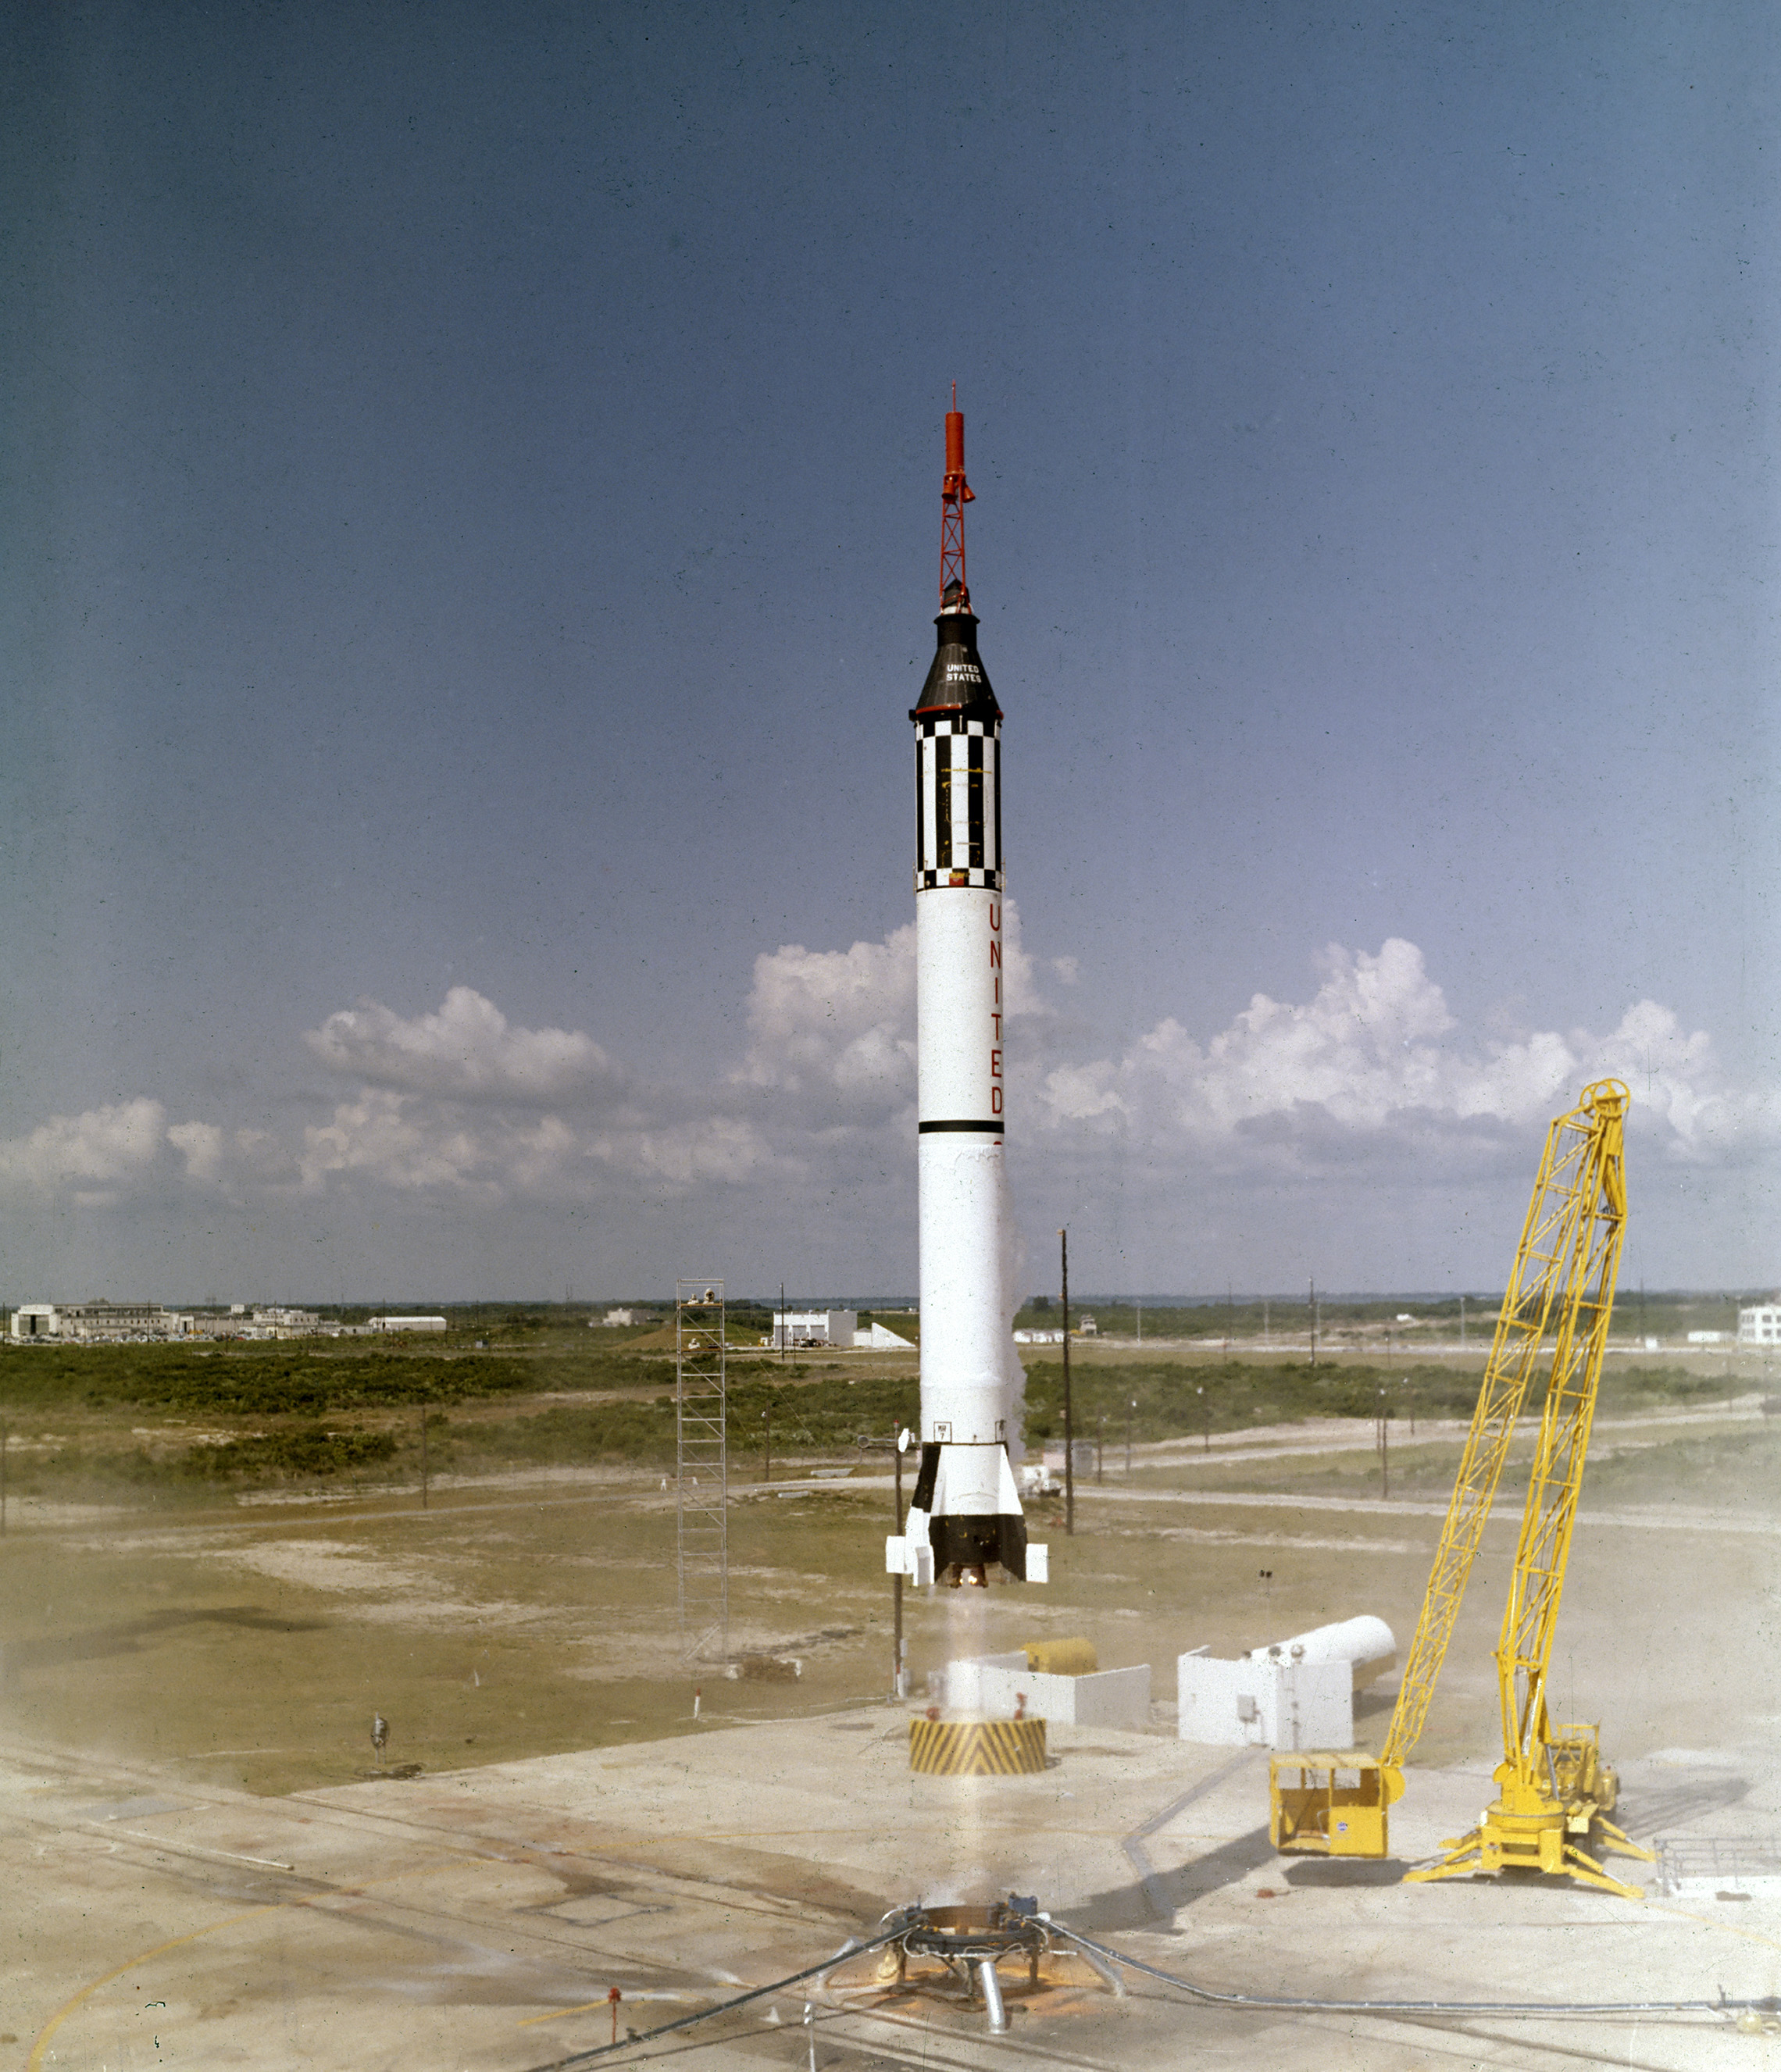 L'astronauta Alan B. Shepard, Jr.si solleva con la navicella spaziale Freedom 7 Mercury il 5 maggio 1961. Questo terzo volo del veicolo Mercury-Redstone (MR-3), sviluppato dal Dr. Wernher von Braun e dal rocket team di Huntsille, Alabama, fu la prima missione spaziale con equipaggio per gli Stati Uniti. Durante il volo suborbitale di 15 minuti, Shepard raggiunse un'altitudine di 115 miglia e percorse 302 miglia in discesa. (NASA)